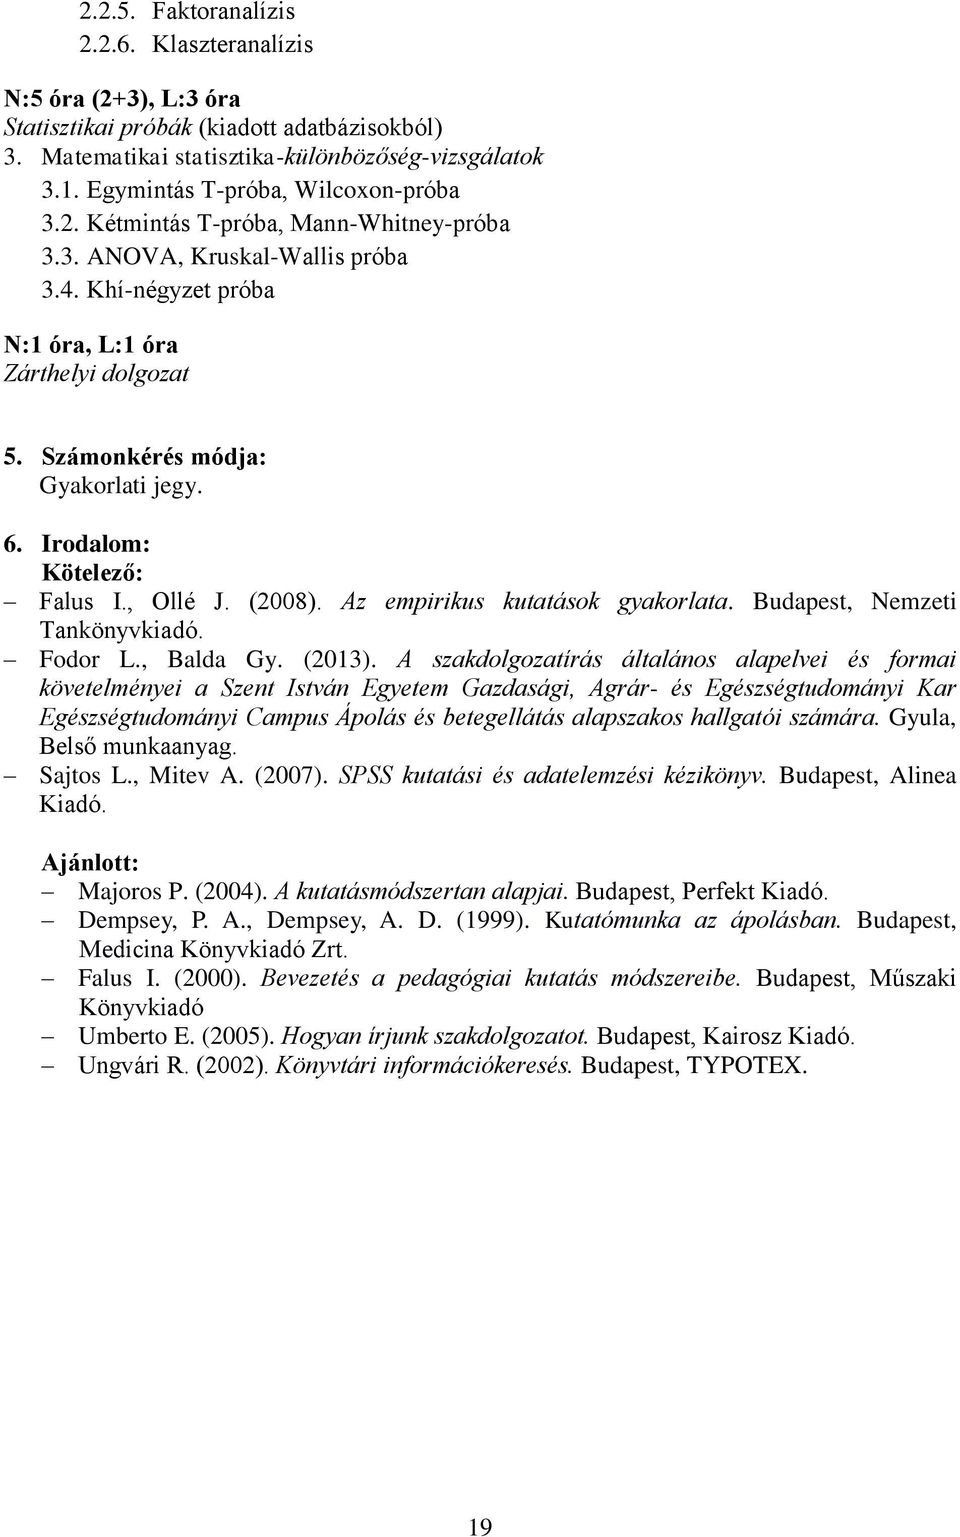 Számonkérés módja: Gyakorlati jegy. 6. Irodalom: Kötelező: Falus I., Ollé J. (2008). Az empirikus kutatások gyakorlata. Budapest, Nemzeti Tankönyvkiadó. Fodor L., Balda Gy. (2013).